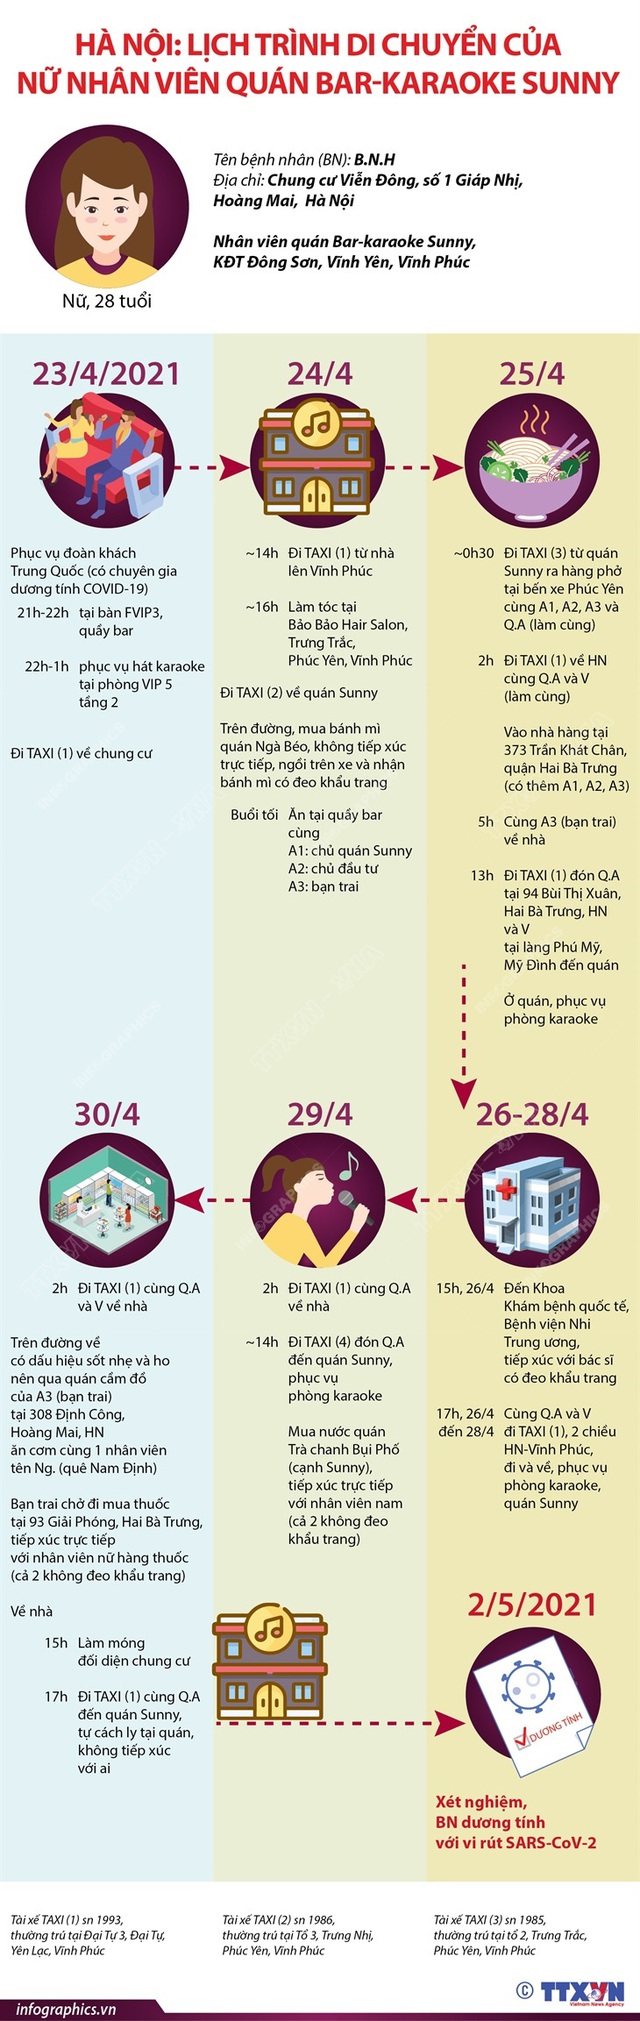 [Infographic] Hà Nội: Lịch trình di chuyển của nữ nhân viên quán bar - karaoke Sunny - Ảnh 1.